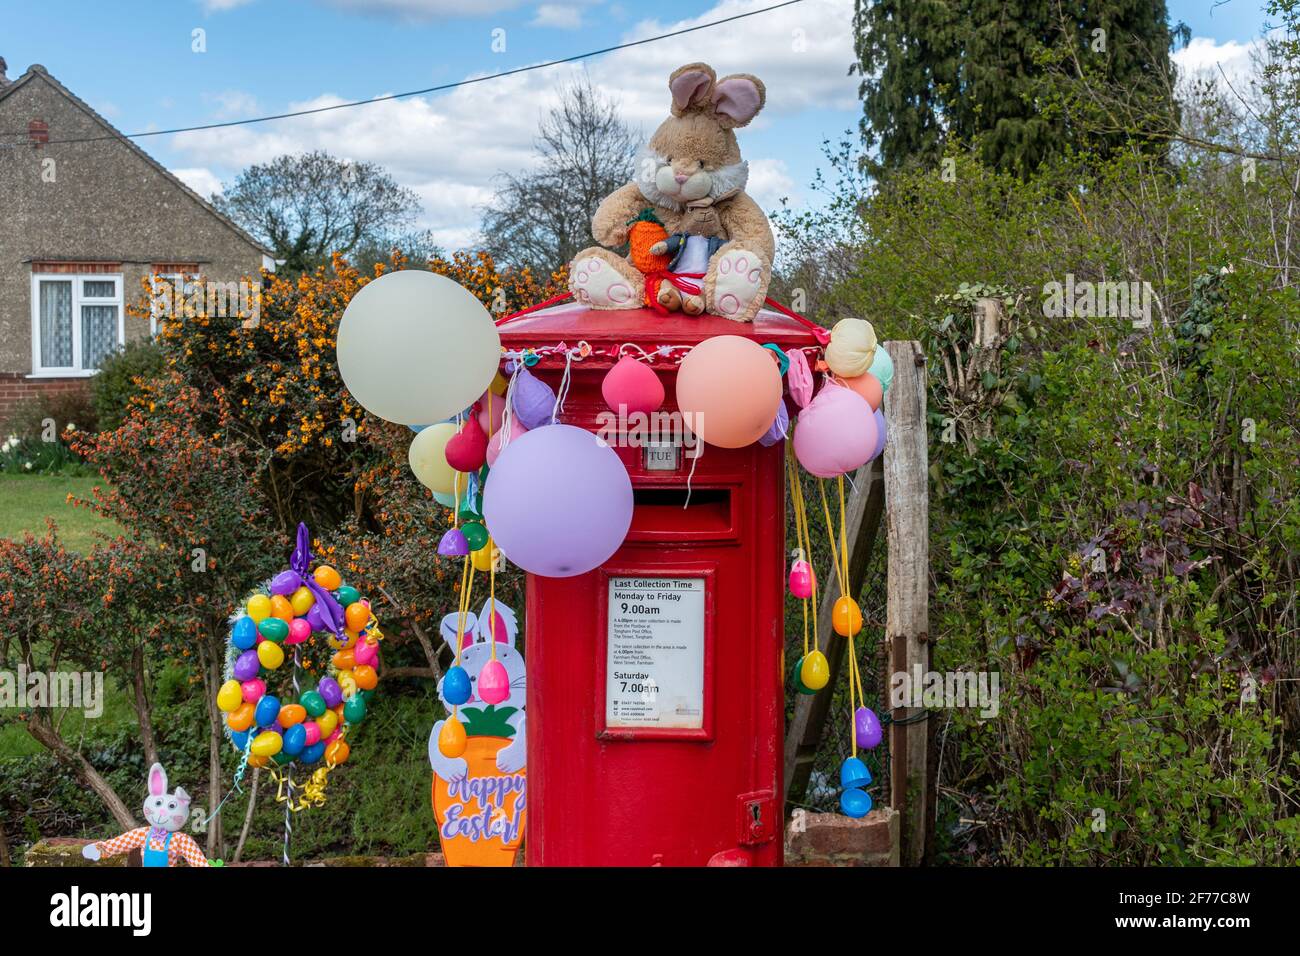 Décorations de Pâques incluant des lapins de Pâques et des ballons sur une boîte aux lettres rouge ou une boîte aux lettres, Royaume-Uni Banque D'Images